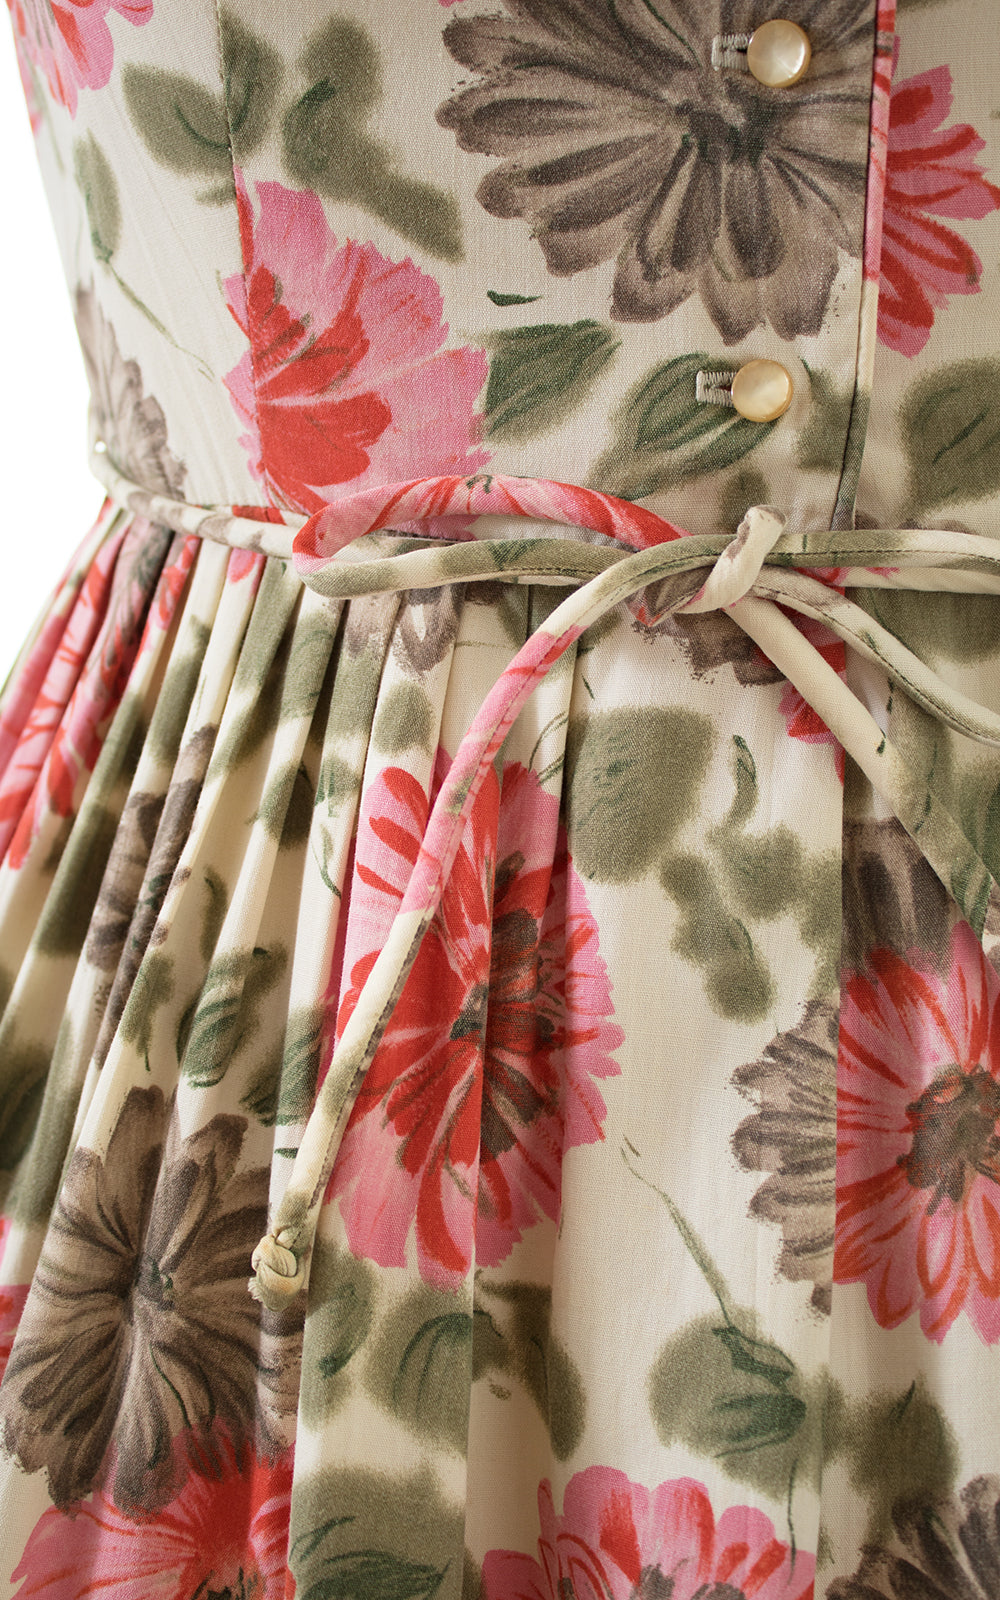 1950s Floral Cotton Shirtwaist Dress